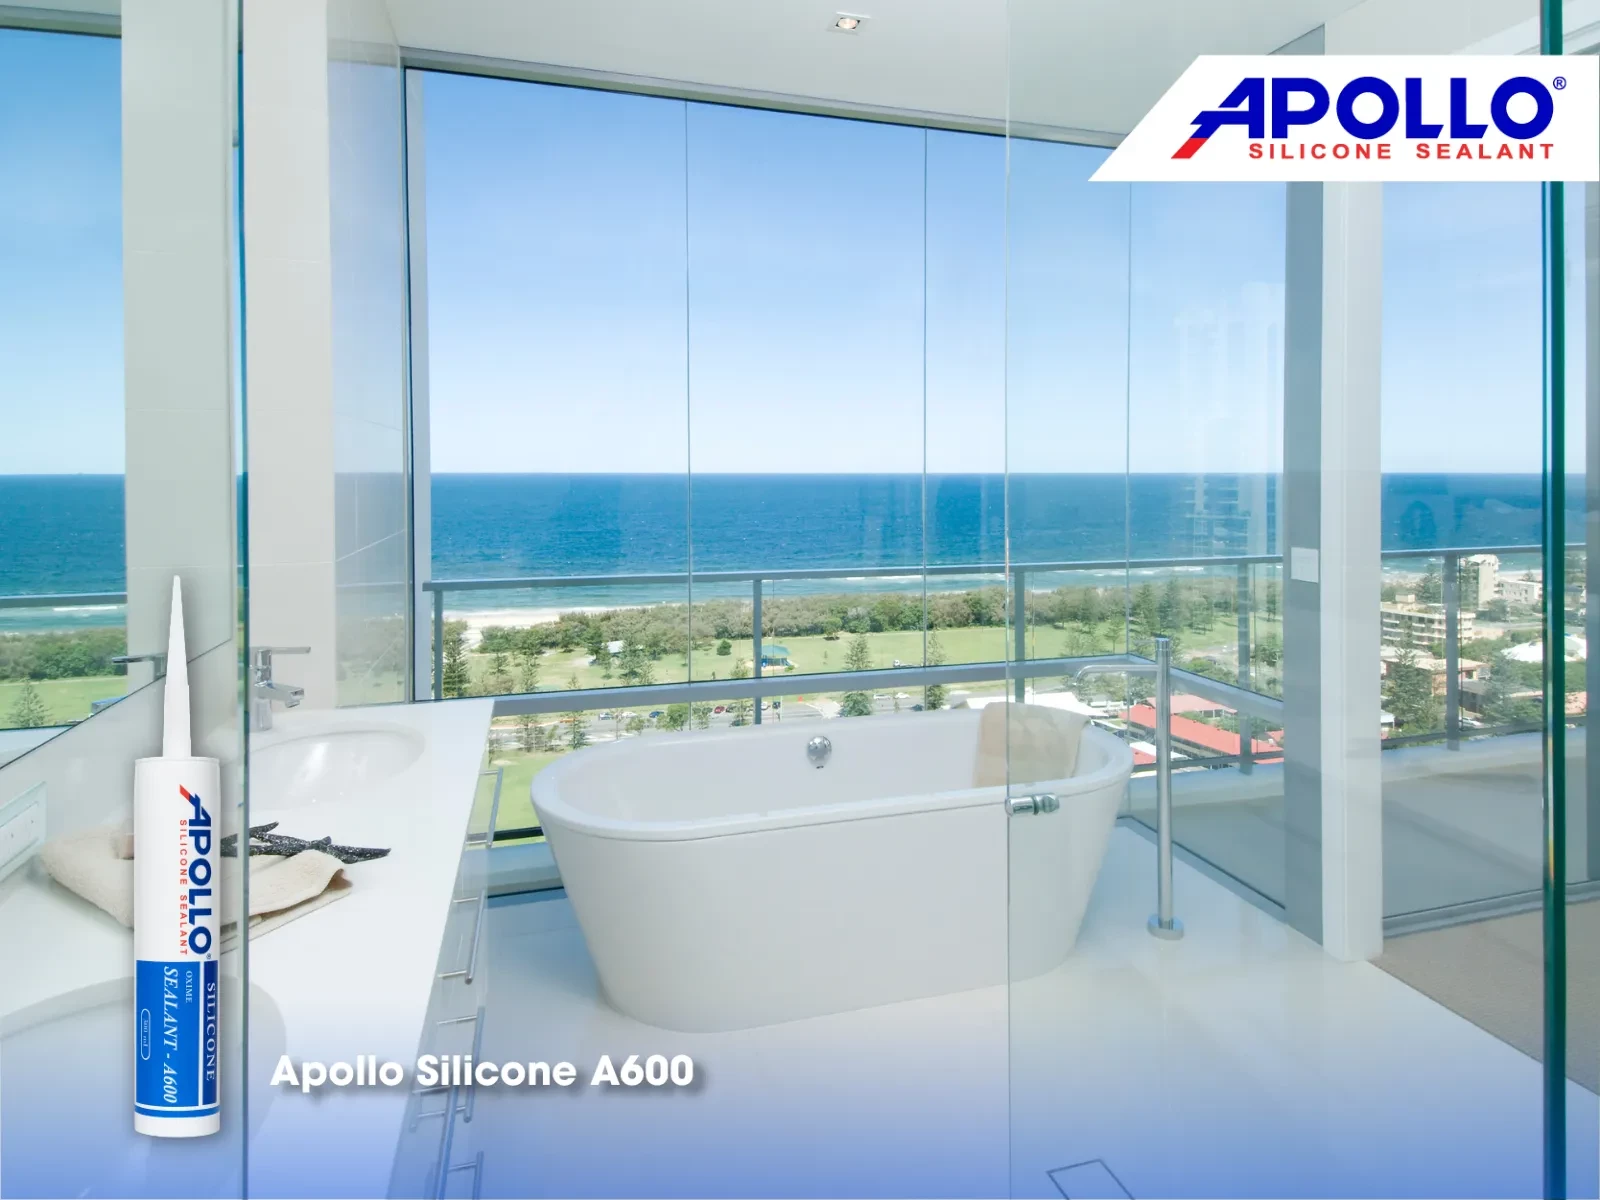 Apollo Silicone A600 thích hợp để dùng ở những nơi cần khả năng chống thấm tốt như nhà tắm